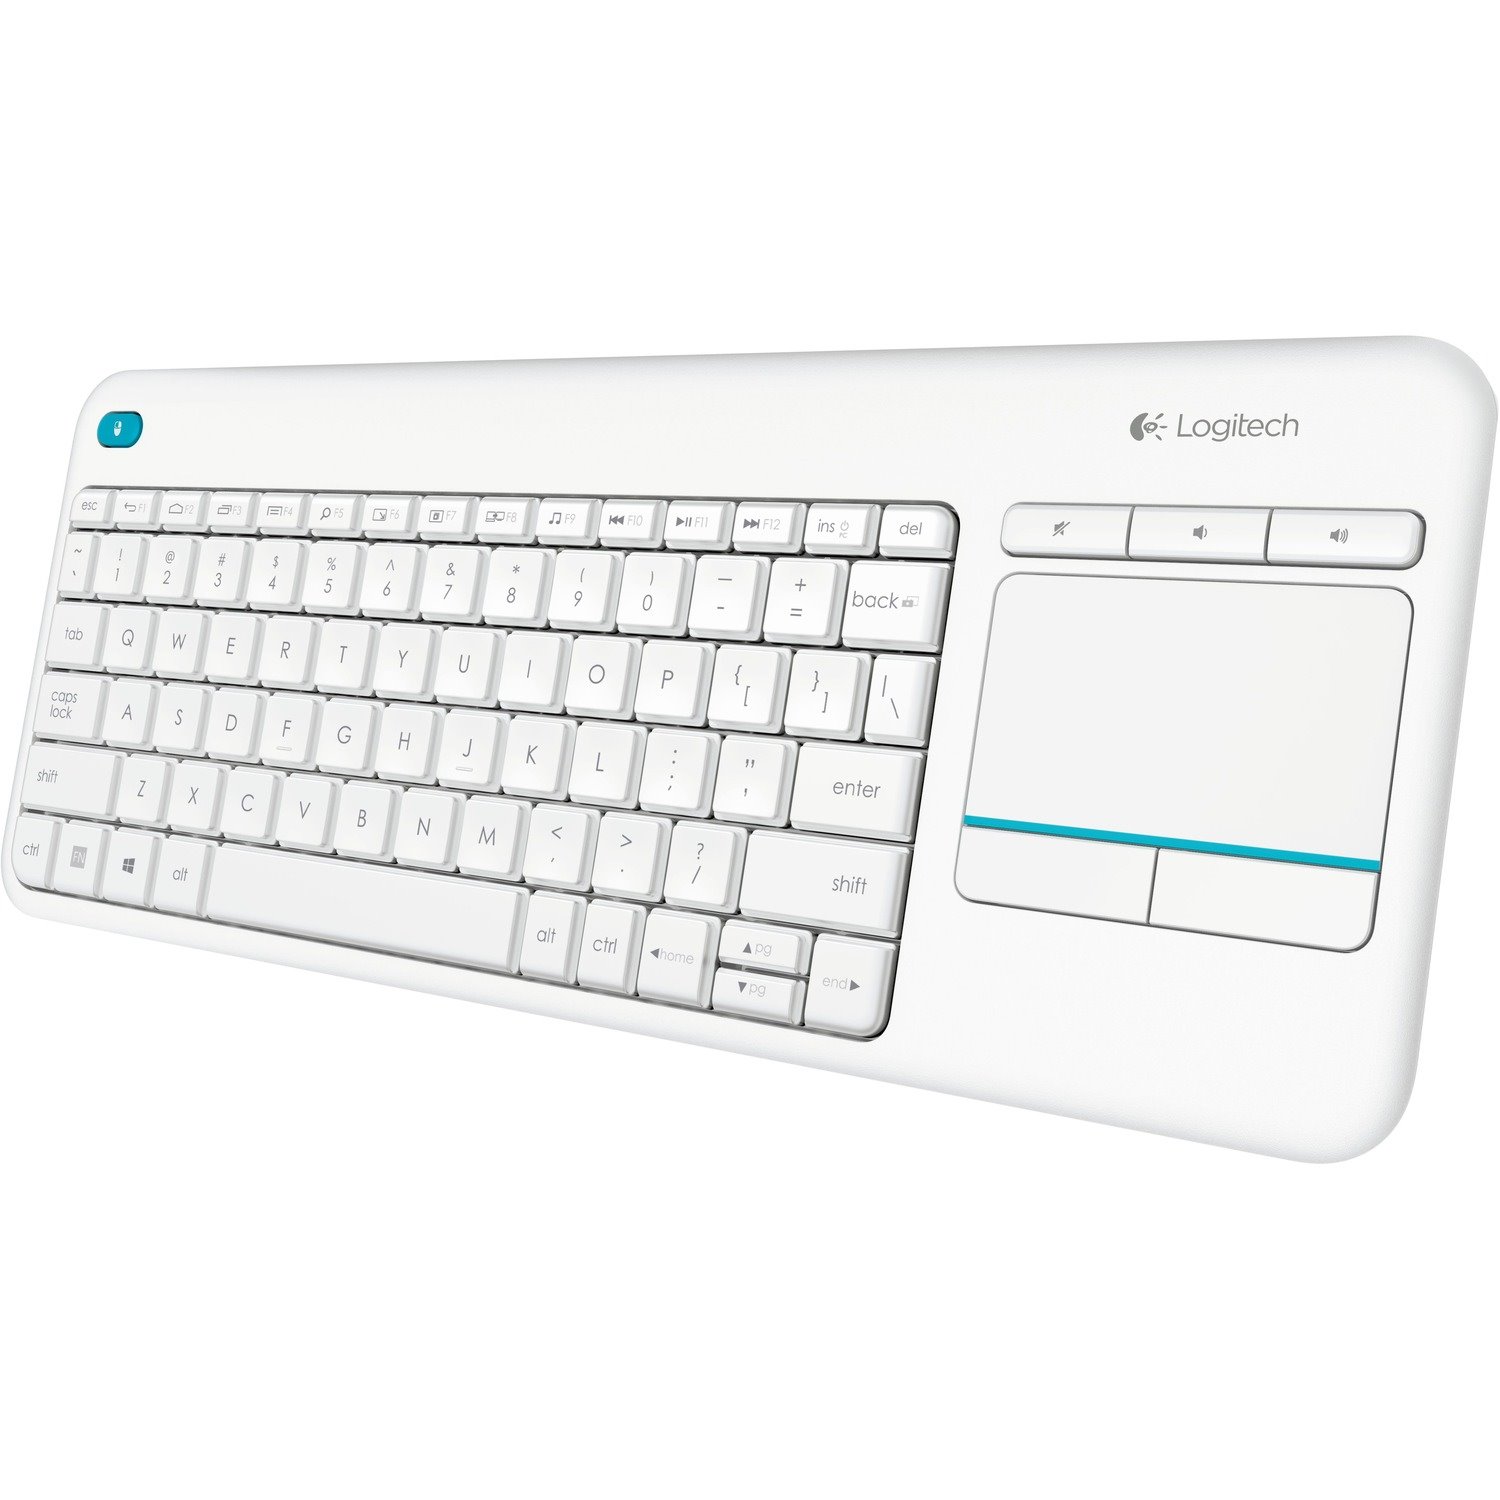 Logitech K400 Plus Keyboard - Wireless Connectivity - USB Interface - TouchPad - QWERTY Layout - White